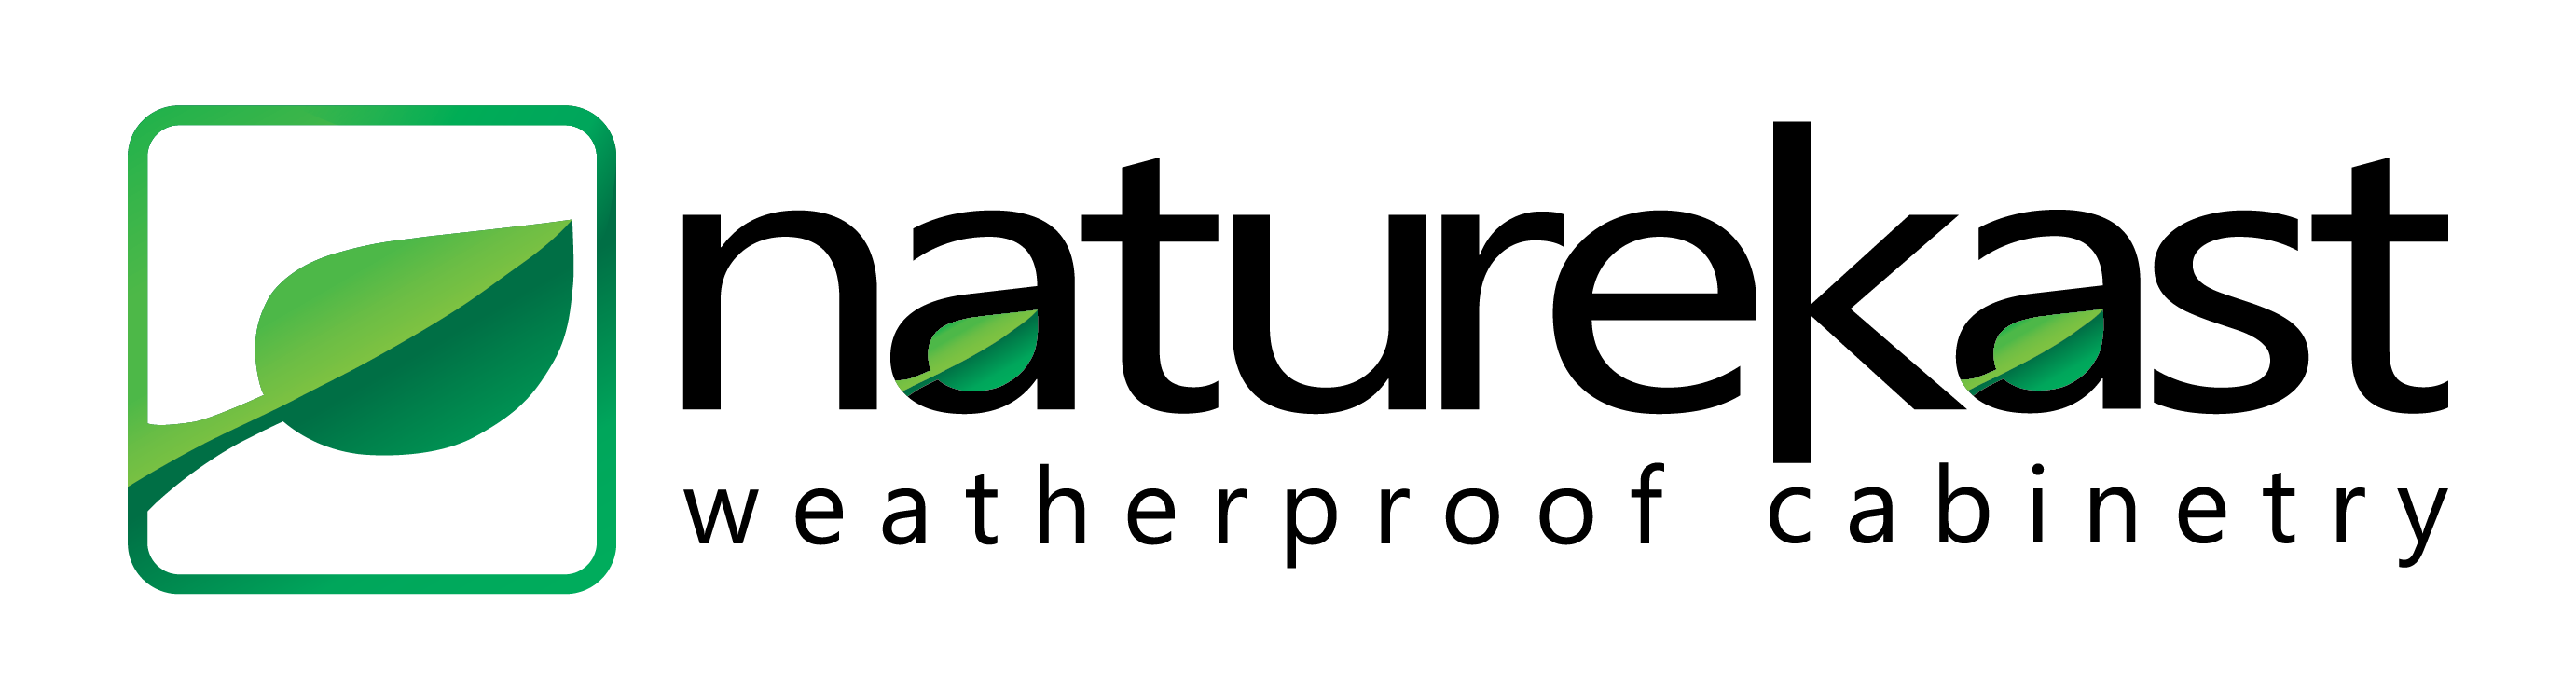 NatureKast-Logo2018 on white backgrounds